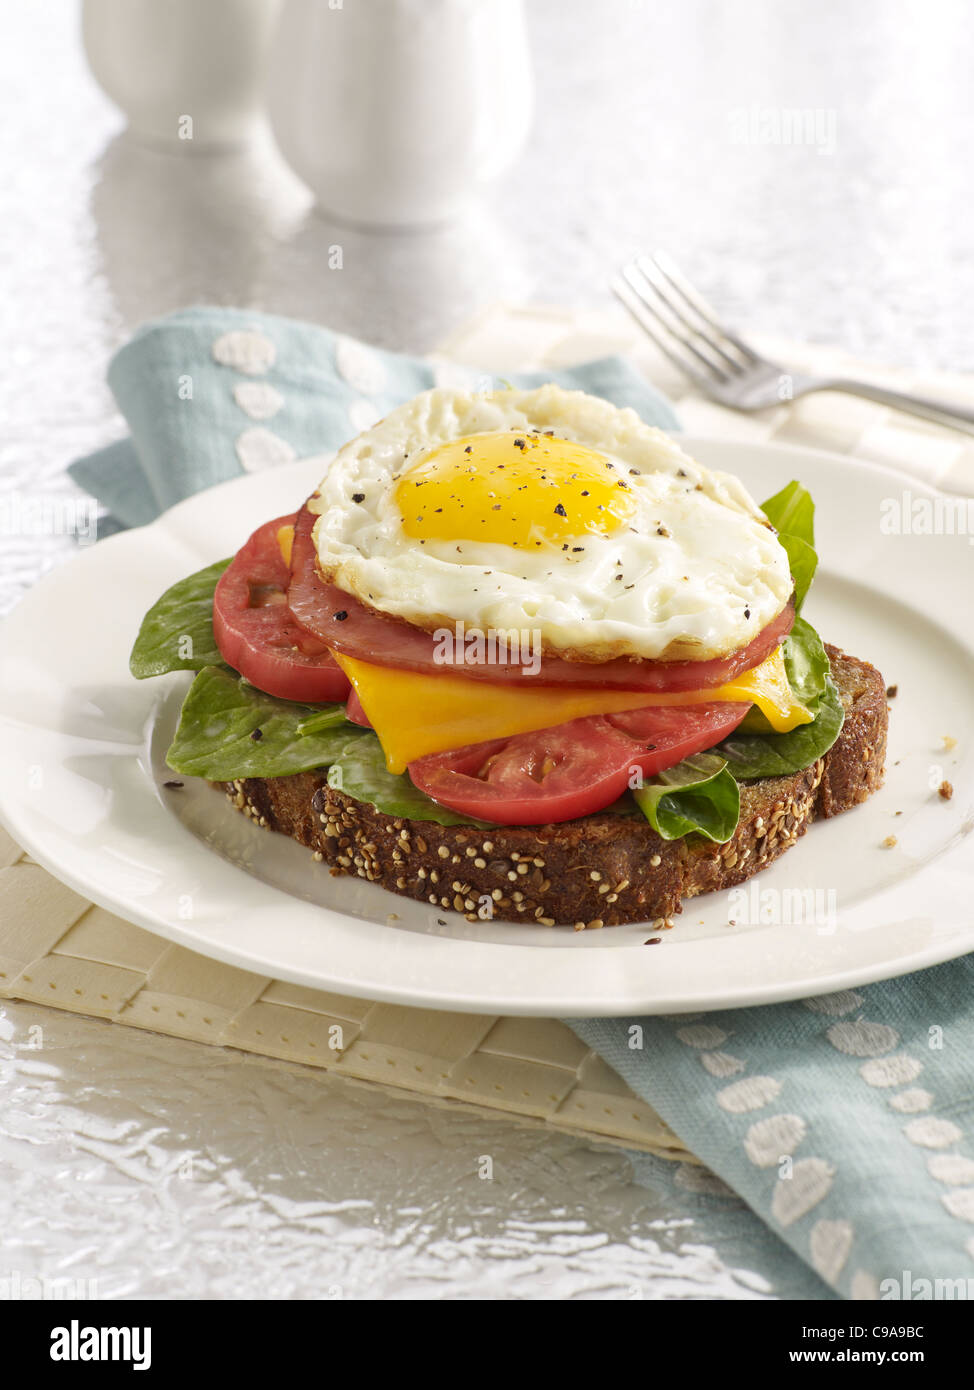 Una pila de tipo sándwich de desayuno con tostadas, rúcula, tomate, queso, jamón y un huevo en una placa blanca. Foto de stock